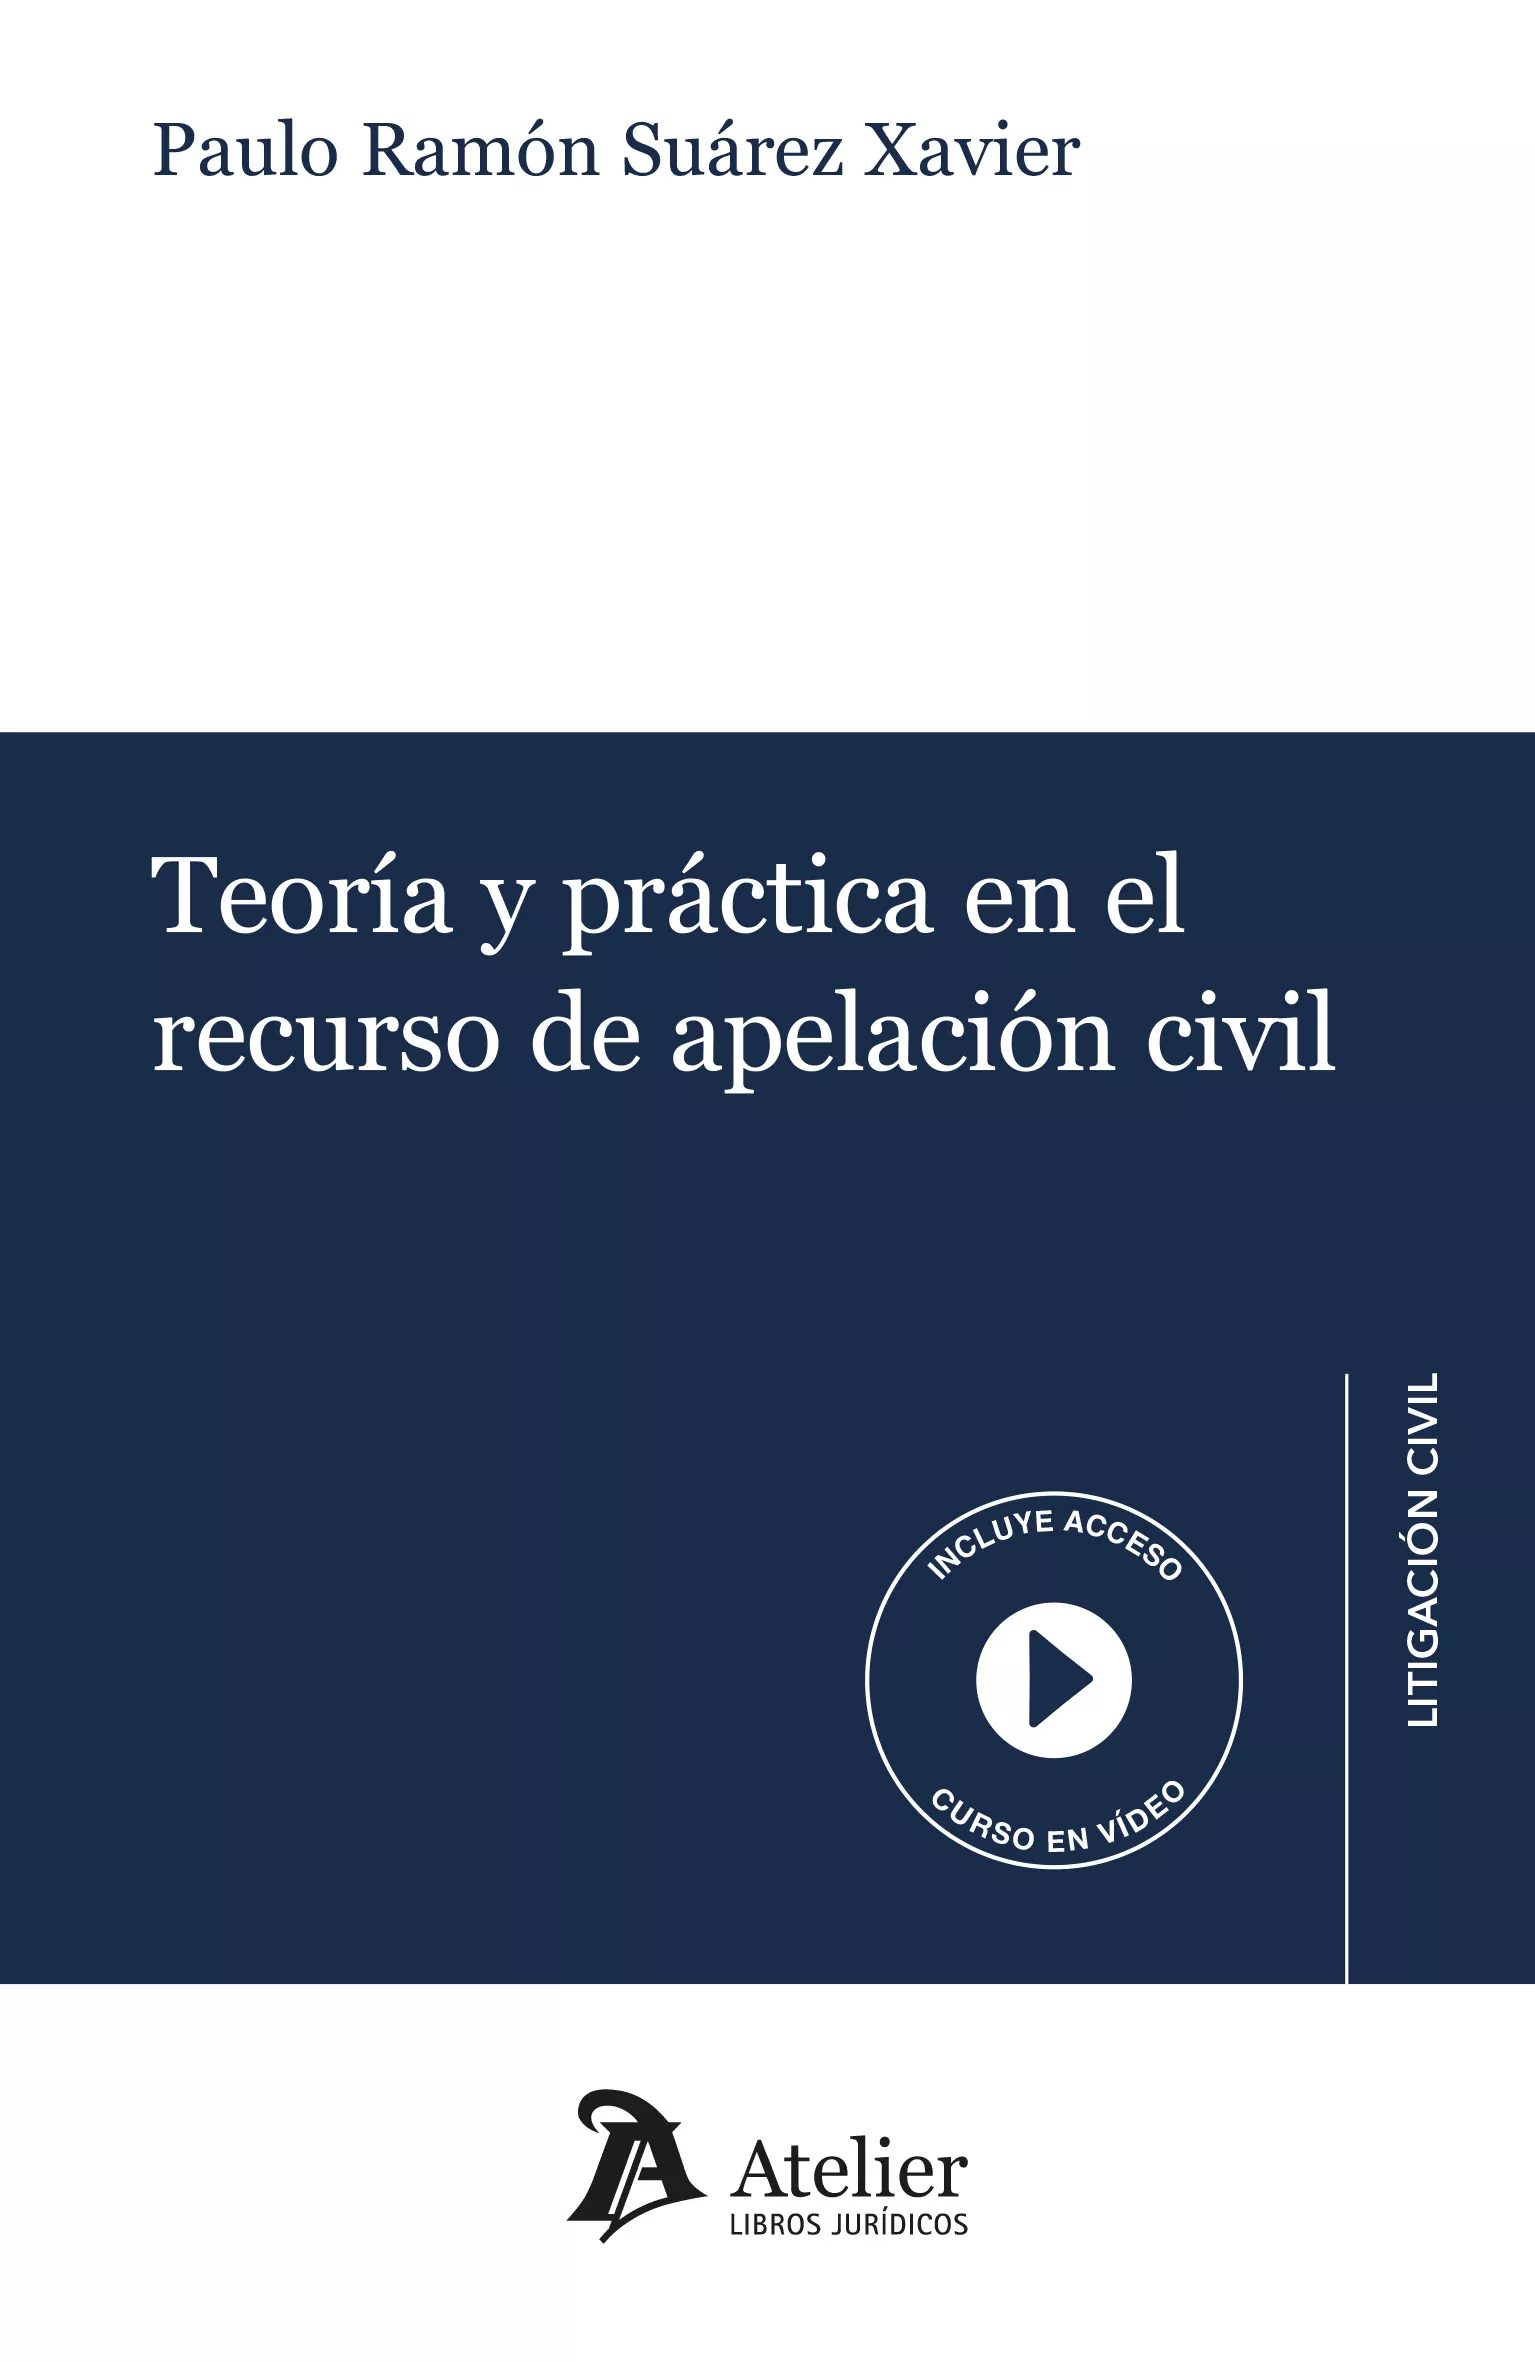 Teoría y práctica en el recurso de apelación civil